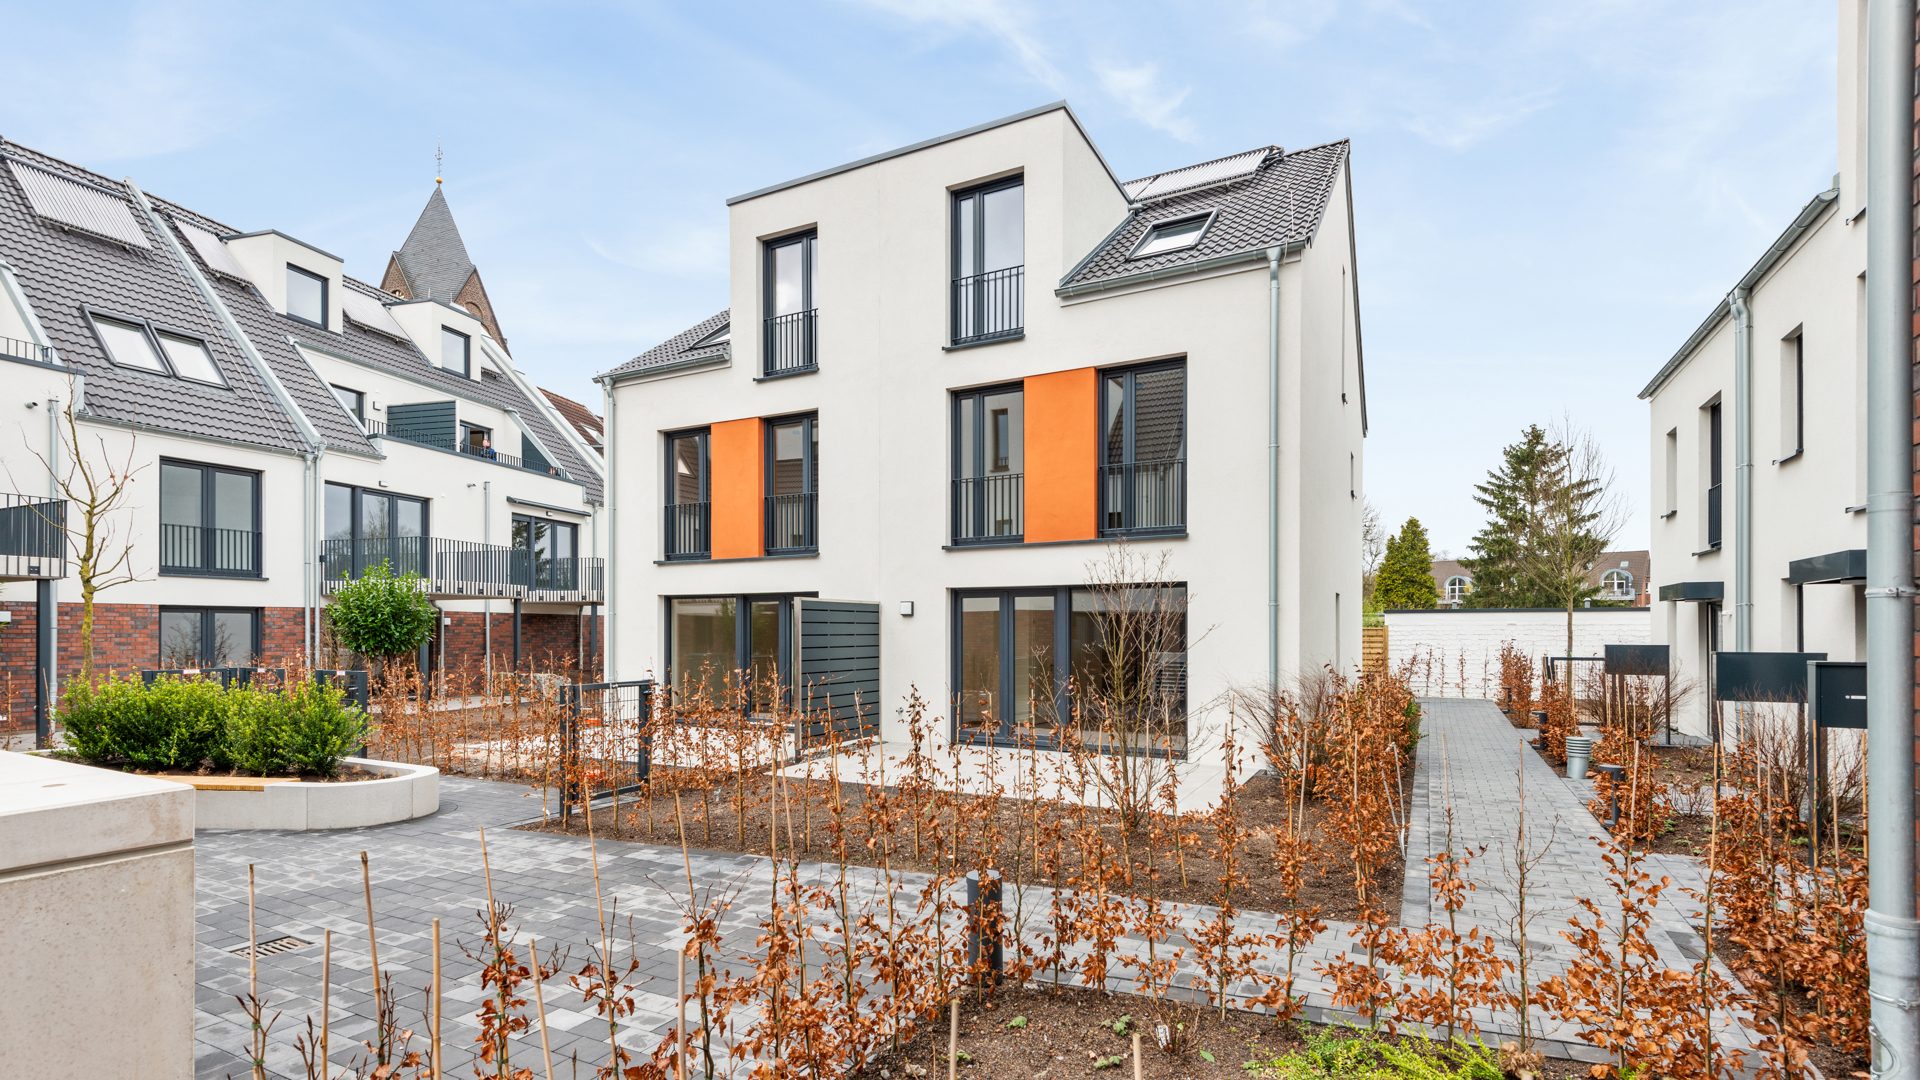 Böcker Wohnimmobilien - Immobilienangebot - Düsseldorf / Angermund - Alle - Neubau: Helle Doppelhaushälfte mit Garten und Terrasse!